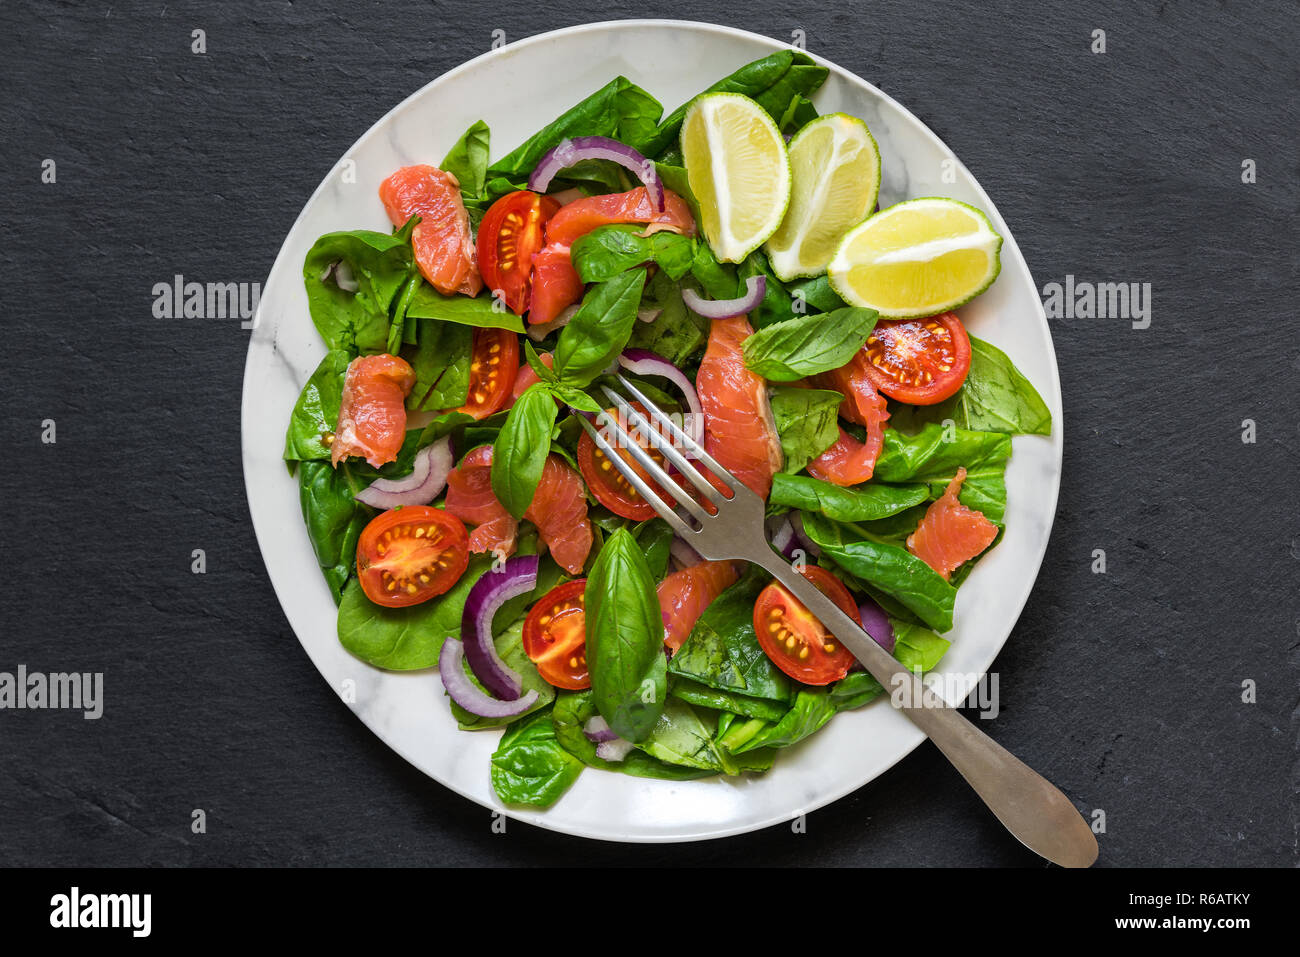 Salmone con insalata di spinaci, pomodori ciliegini, cipolla rossa e basilico con forcella in marmo bianco piastra. cibo sano concetto. vista superiore Foto Stock